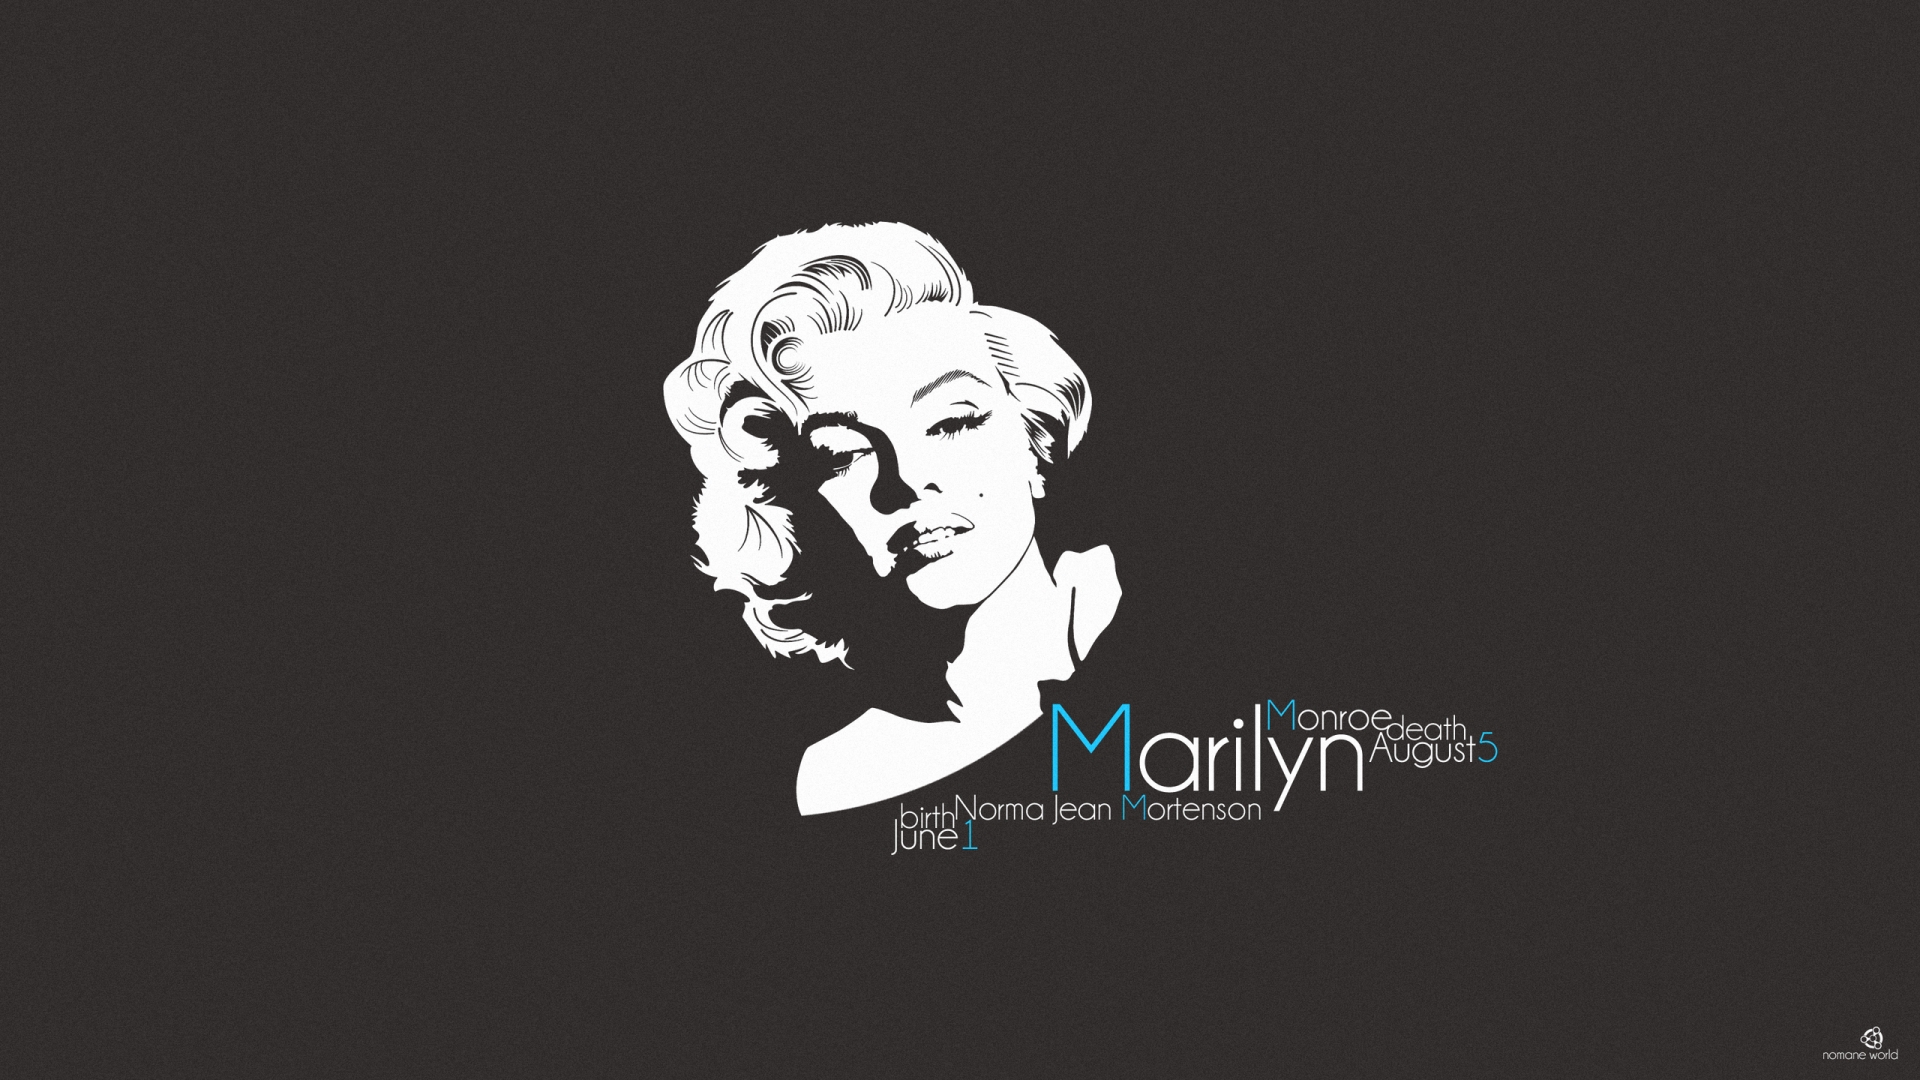 Marilyn Monroe for 1920 x 1080 HDTV 1080p resolution